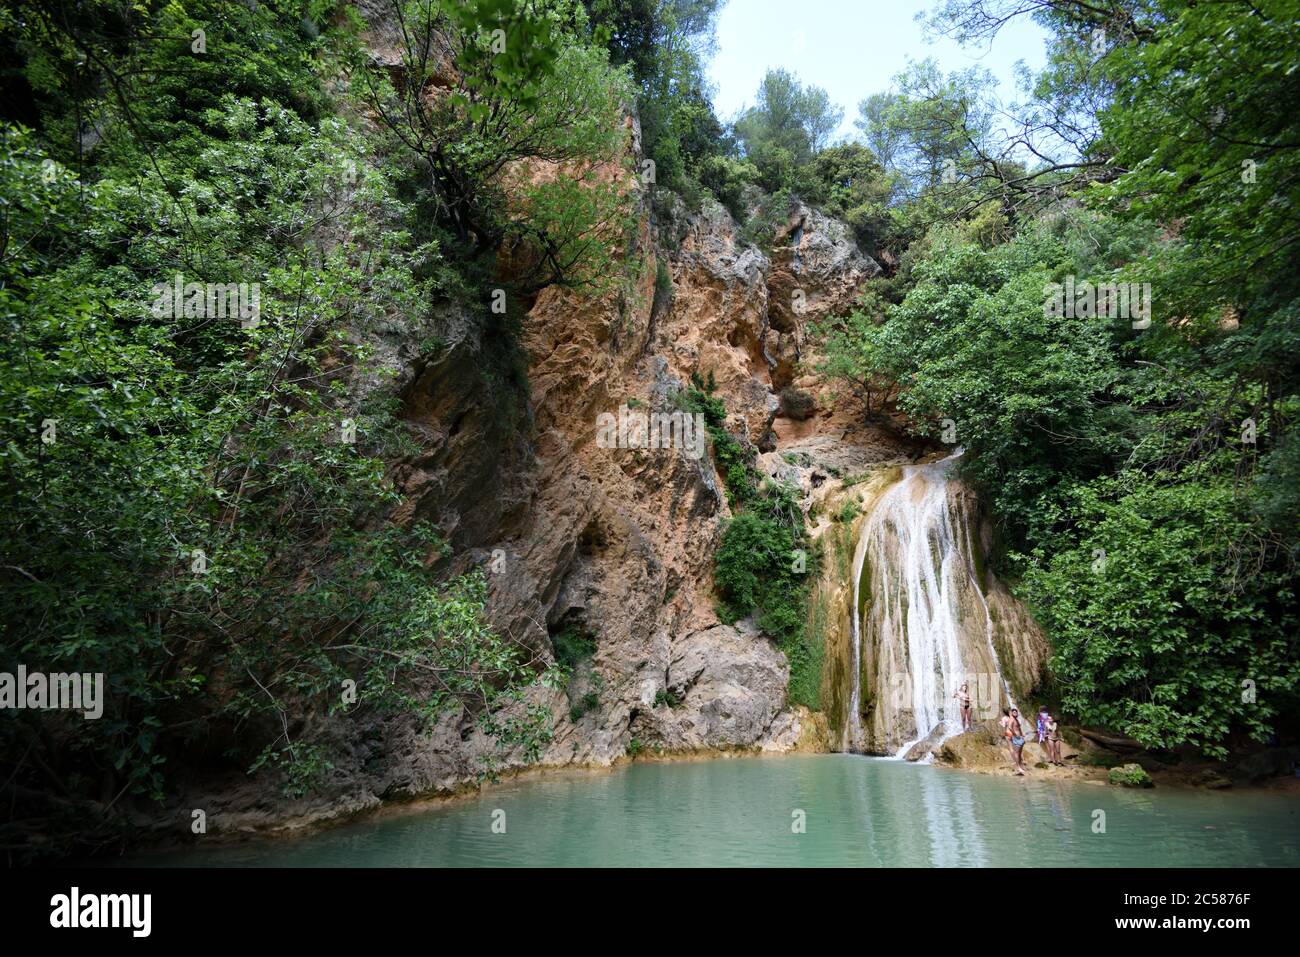 Touristen unter dem Wasserfall Cascade des Carmes oder Carmes im Naturschutzgebiet Vallon des Carmes oder Carmes Tal Barjols Var Provence Frankreich Stockfoto